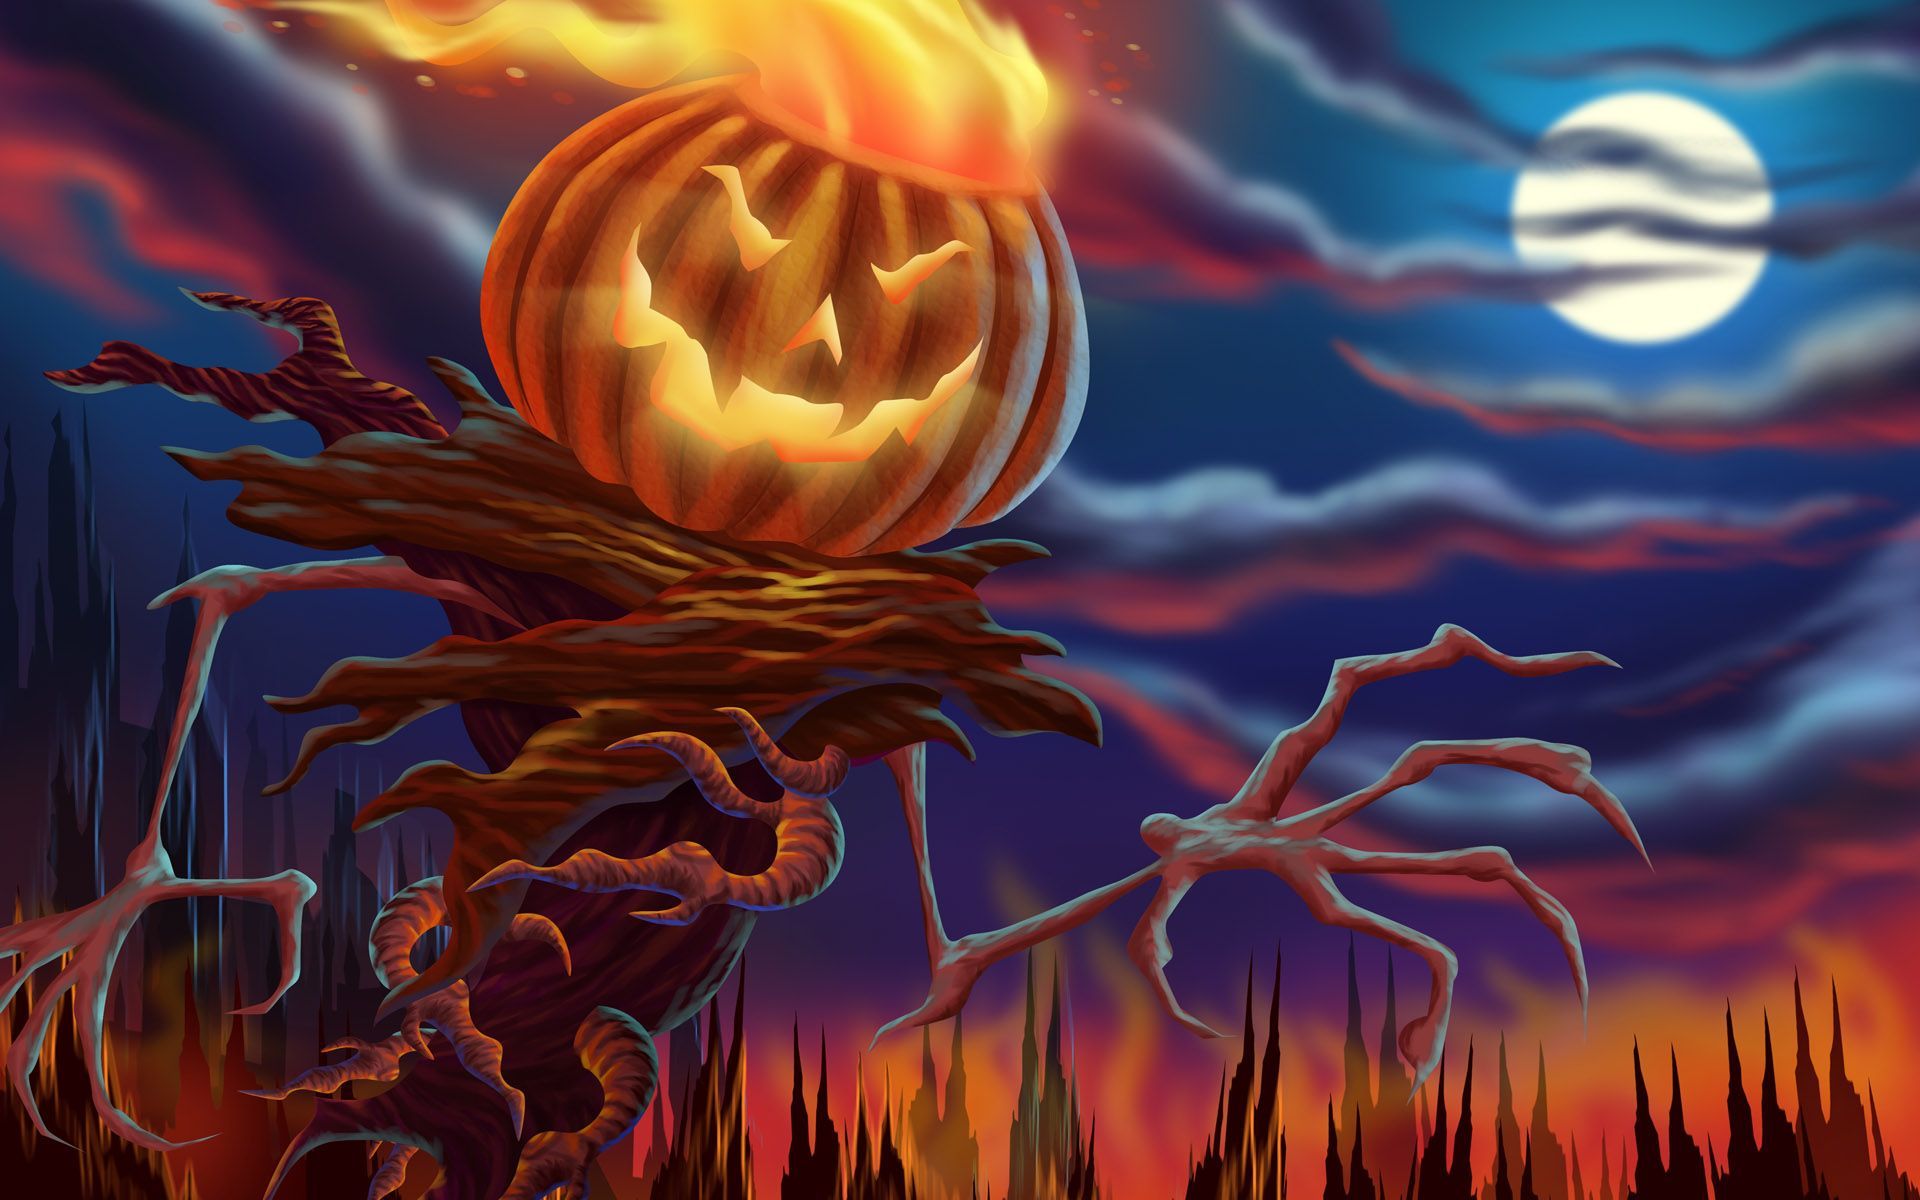 Download Pumpkin Monster HD Wallpaper. Halloween wallpaper, Halloween prints, Scary halloween pumpkins